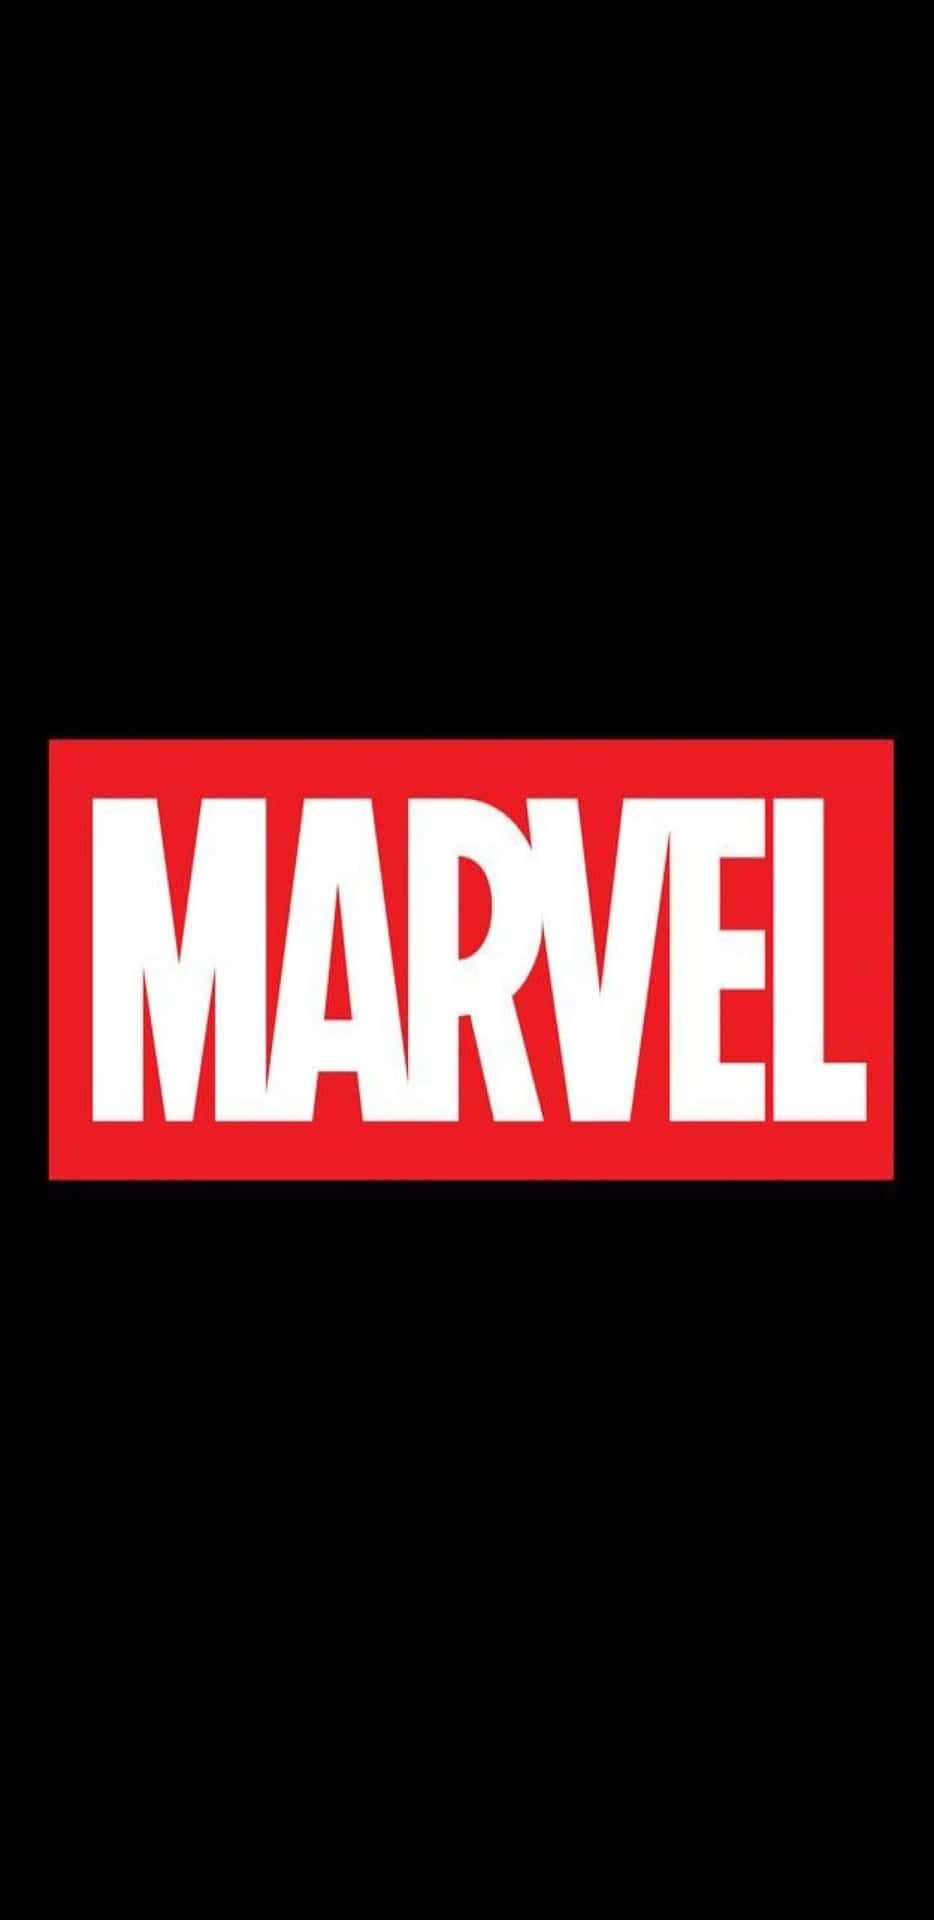 Pixel 3xl baggrund Marvels officielle logo: Denne baggrund har Marvels officielle logo i store, klare pixeler på 3xl-skalaen.